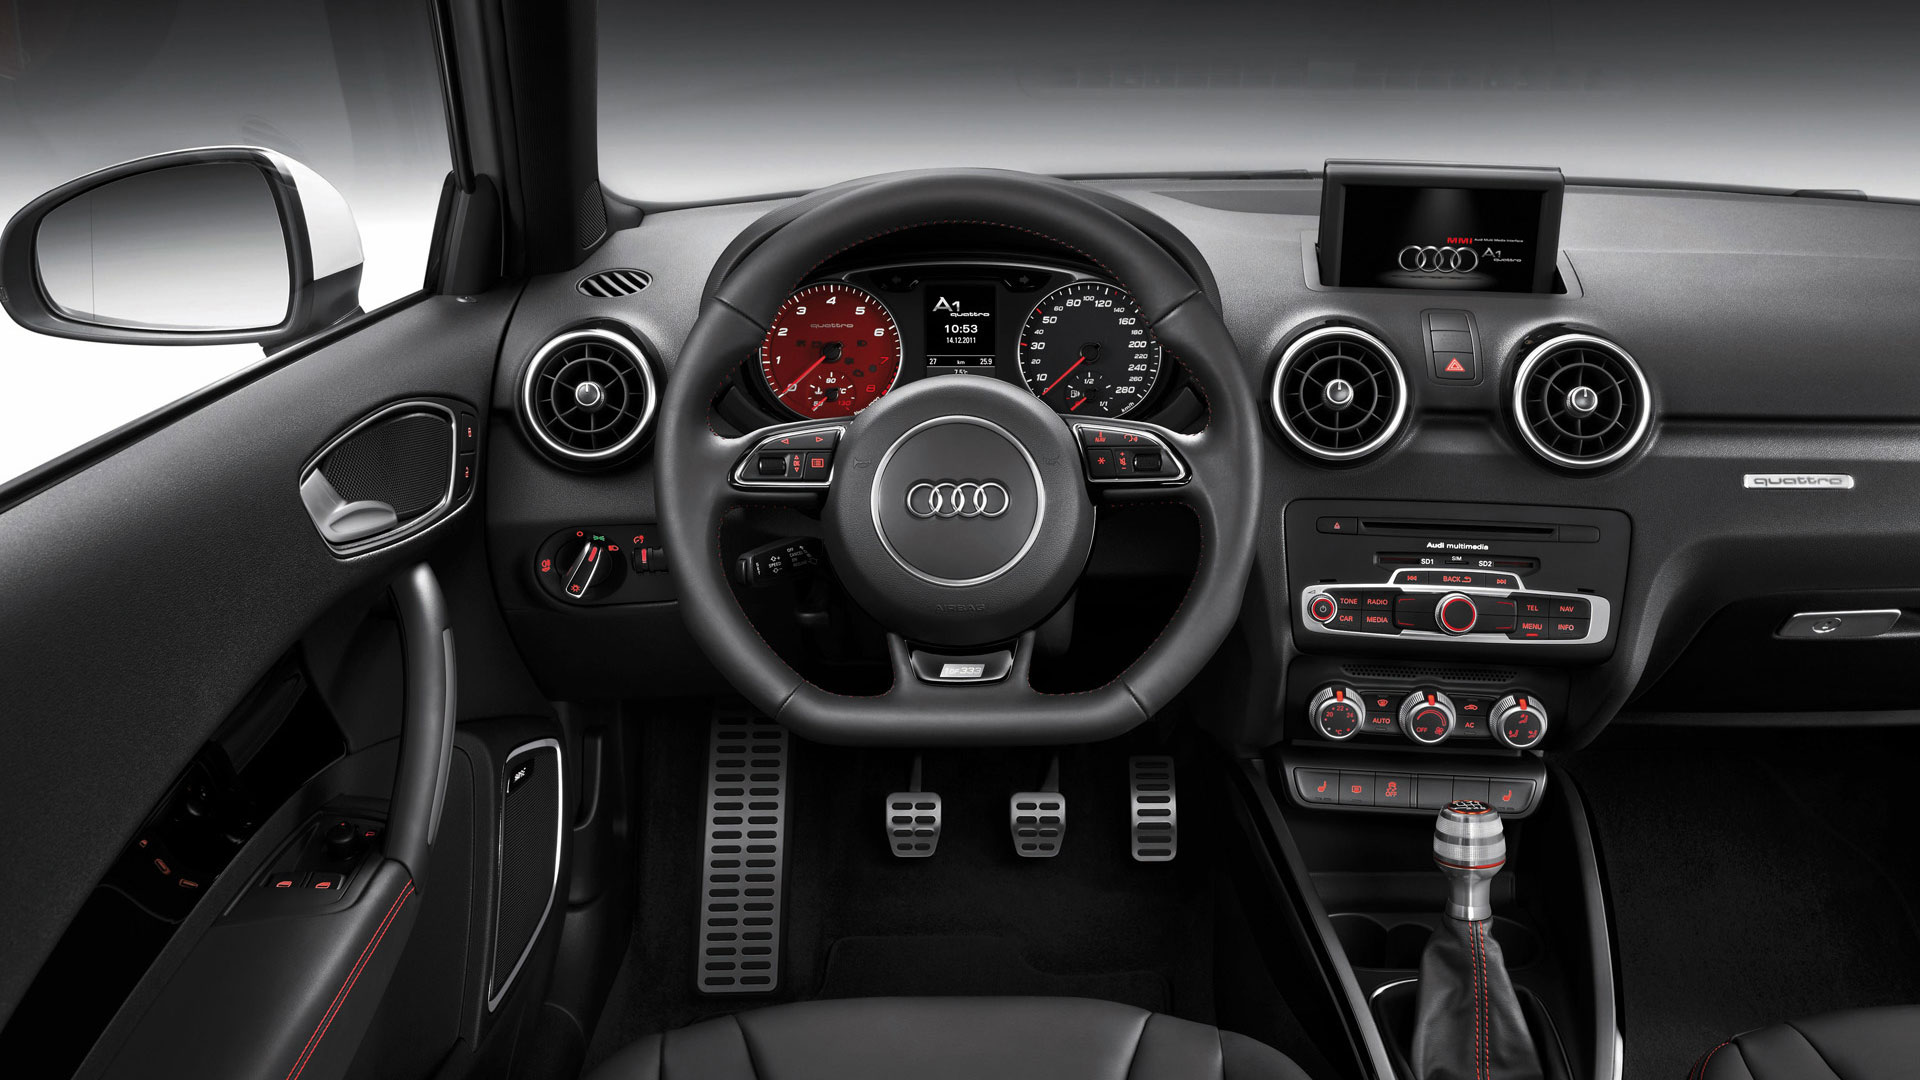 interior-Audi-A1-Quattro-images-wallpaper - Freak Wheel